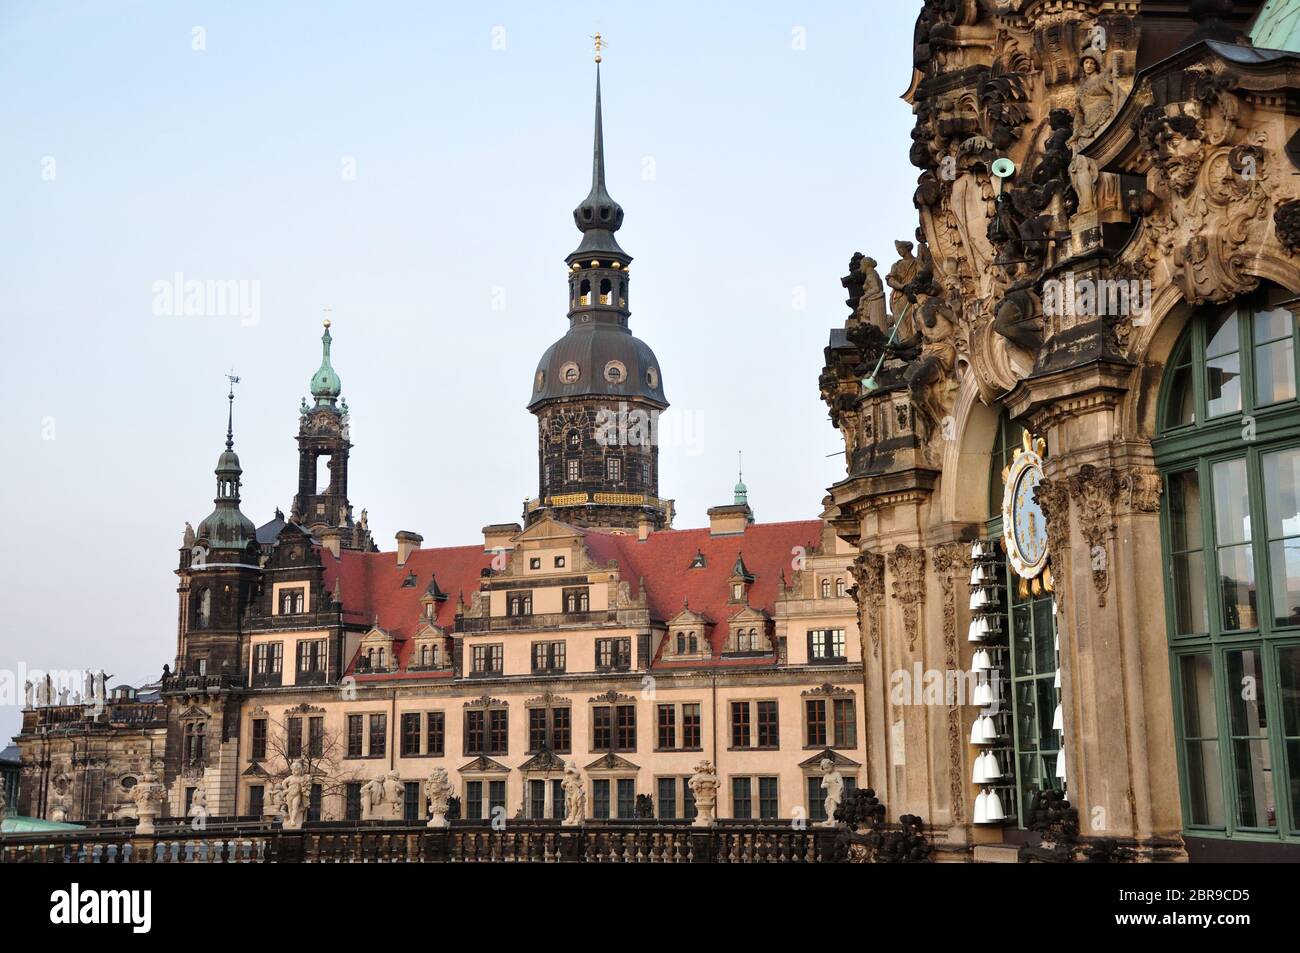 Die wunderbare barocke Altstadt von Dresden im abendlichen Licht des März. Banque D'Images